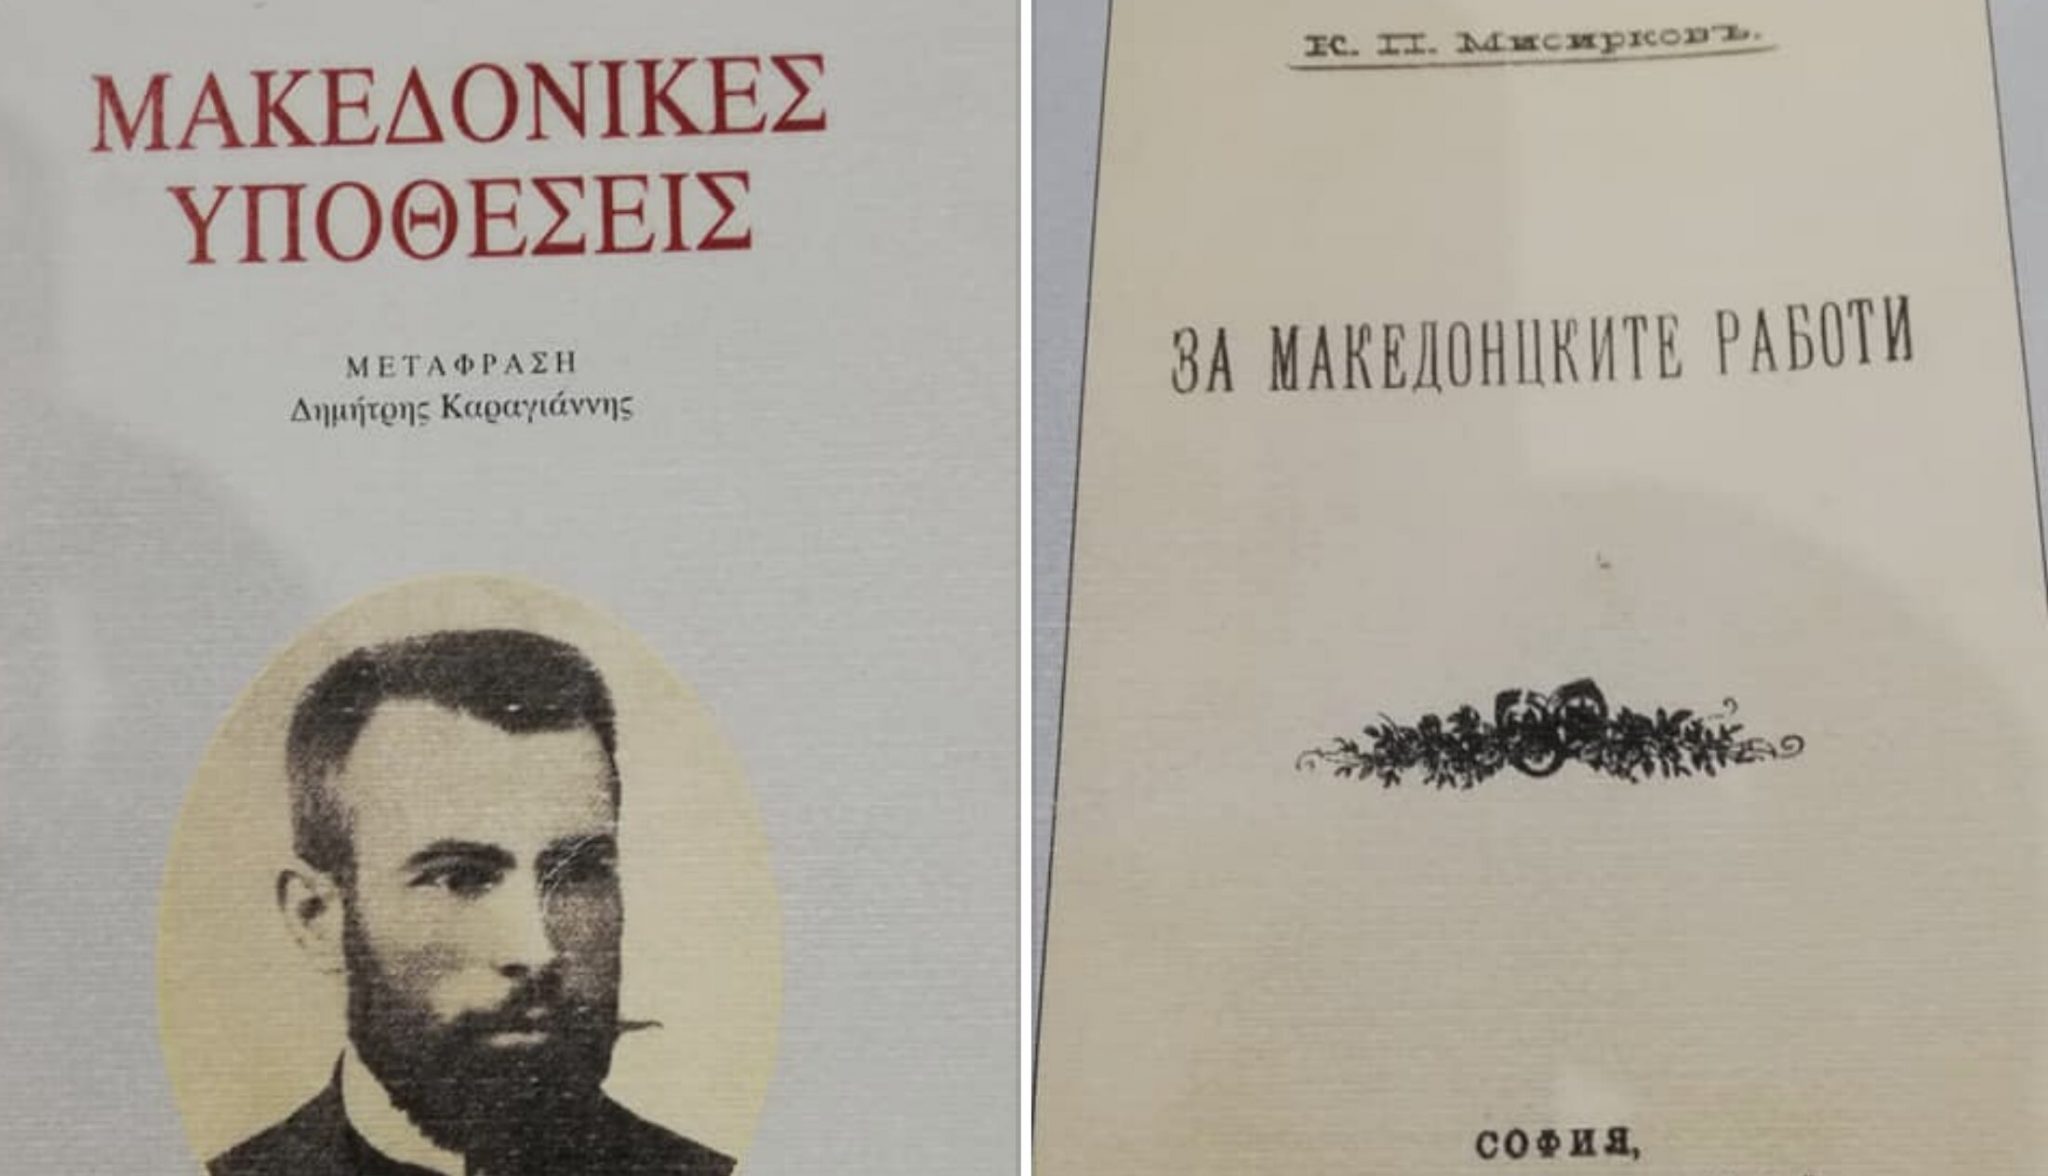 “ΜΑΚΕΔΟΝΙΚΕΣ ΥΠΟΘΕΣΕΙΣ, 1903”. Από αυτό το βιβλίο φούντωσε ο ψευτομακεδονισμος των Σλάβων.